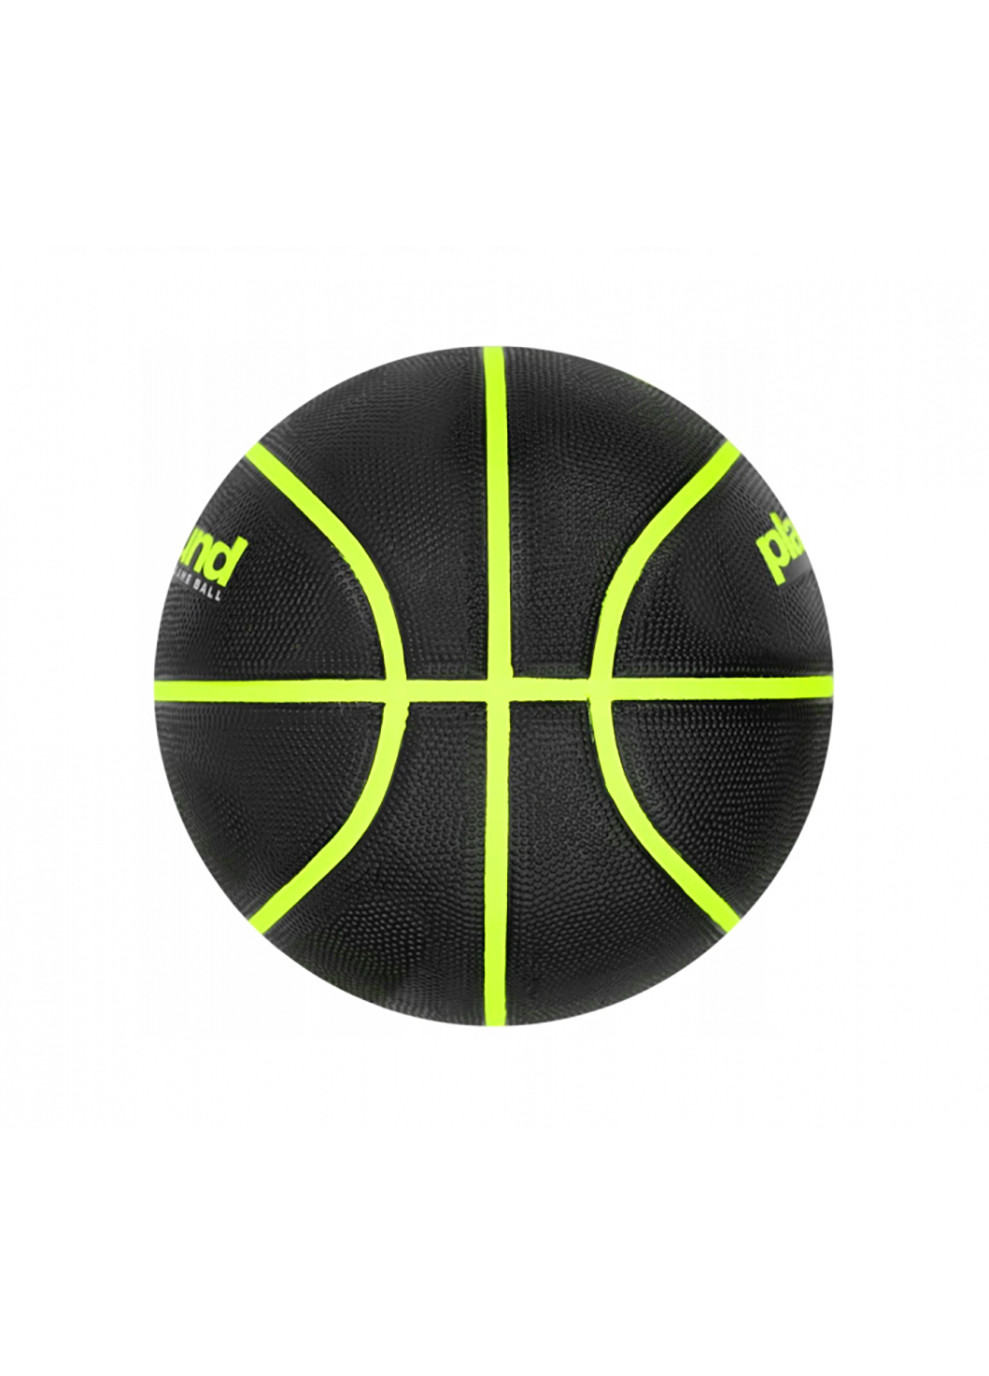 Баскетбольный мяч Everyday Playground 8P Deflated Size 7 Black / Volt (N.100.4498.085.07) Nike (253678247)